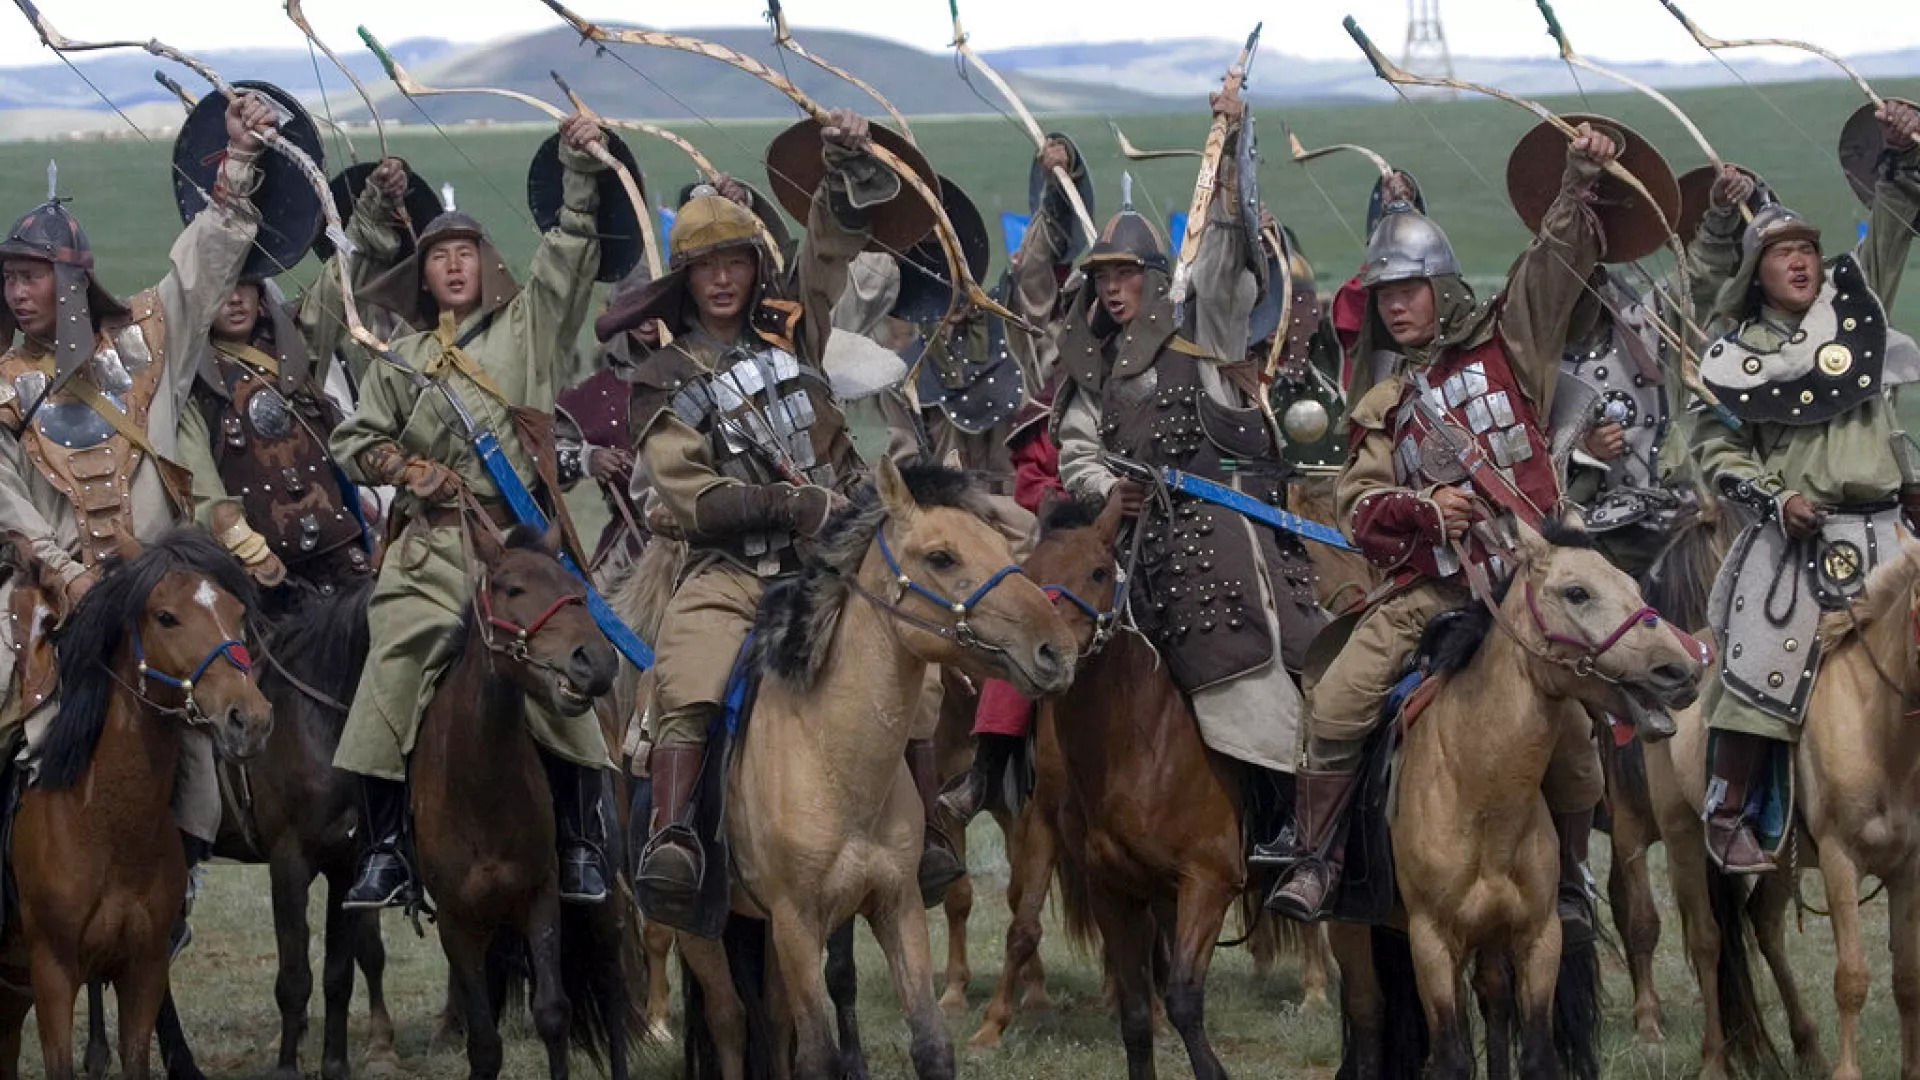 چنگیزخان مغول چگونه بزرگترین امپراتوری تاریخ بشر را شکل داد؟